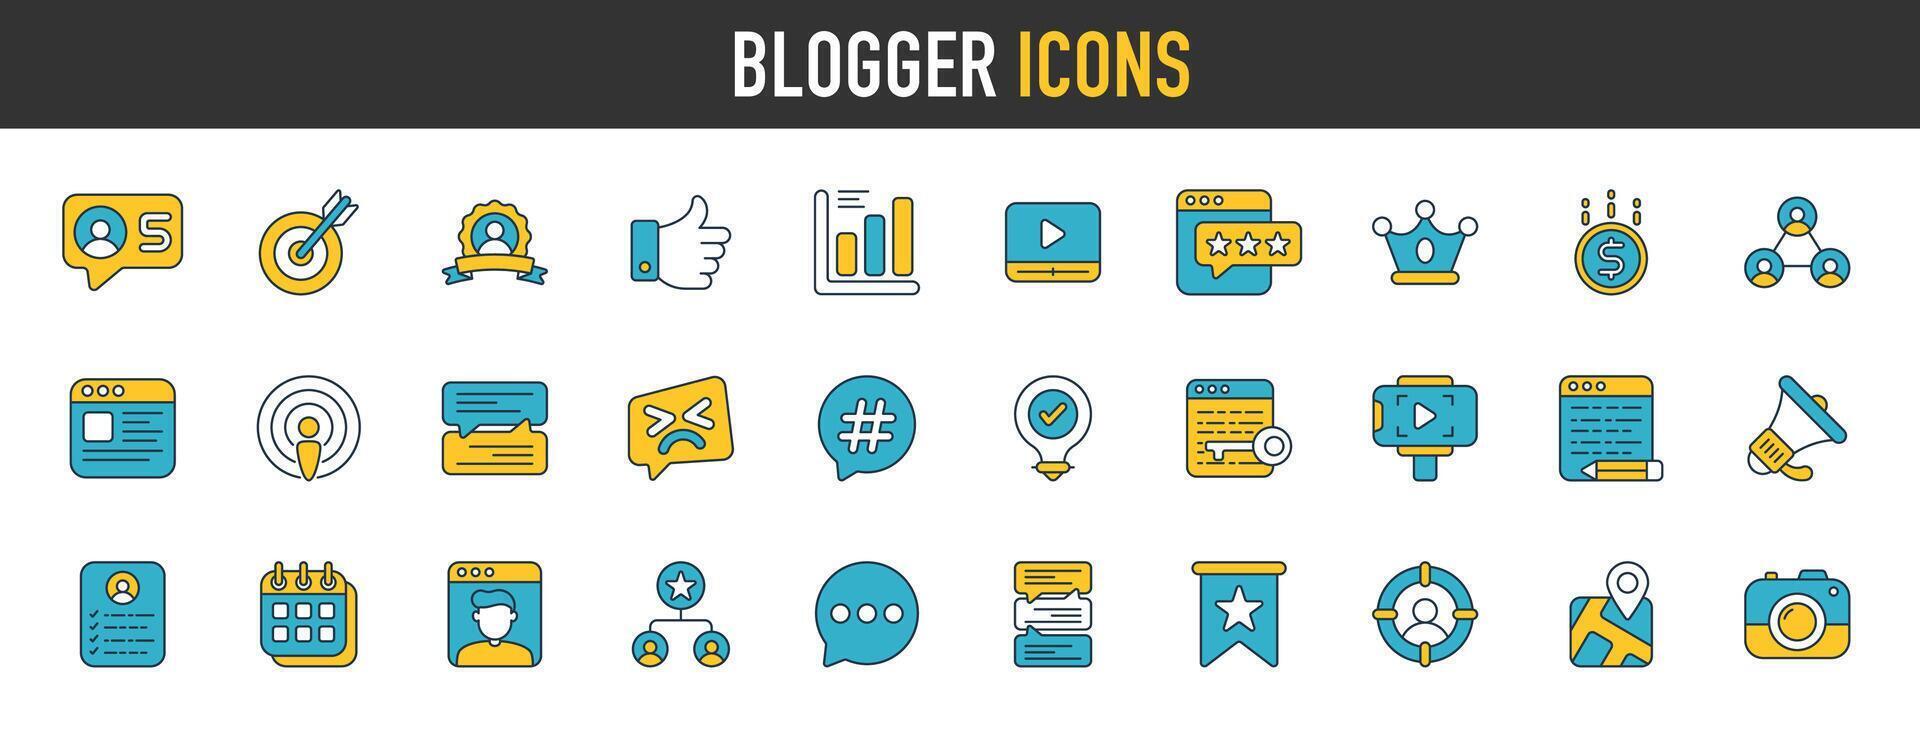 blogger iconos datos analítica, gestión, mensaje, sitio web, Blog, contenido, negocio marketing, social red y más. vector ilustración